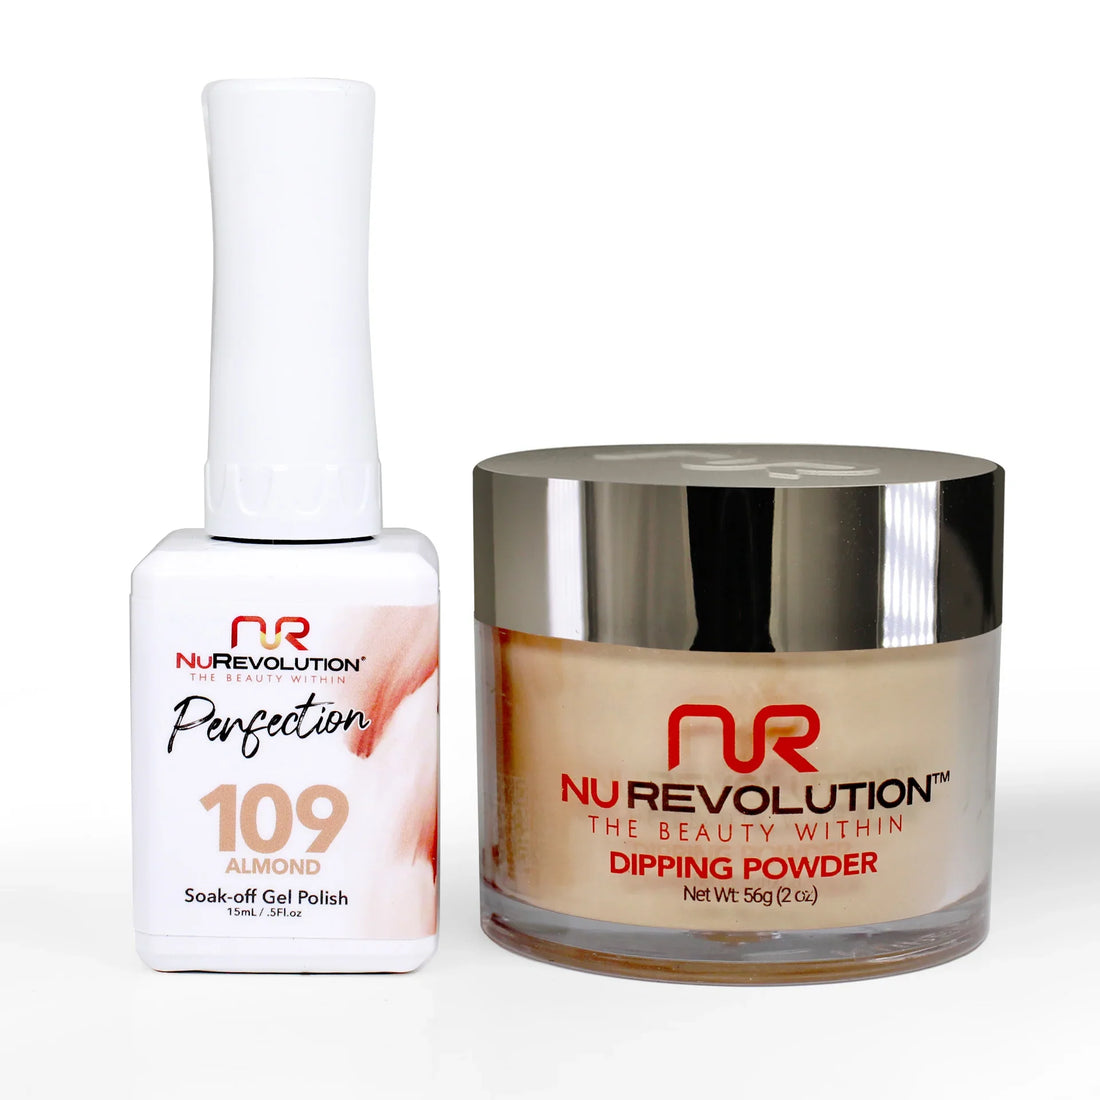 NuRevolution Perfection 109 Almond